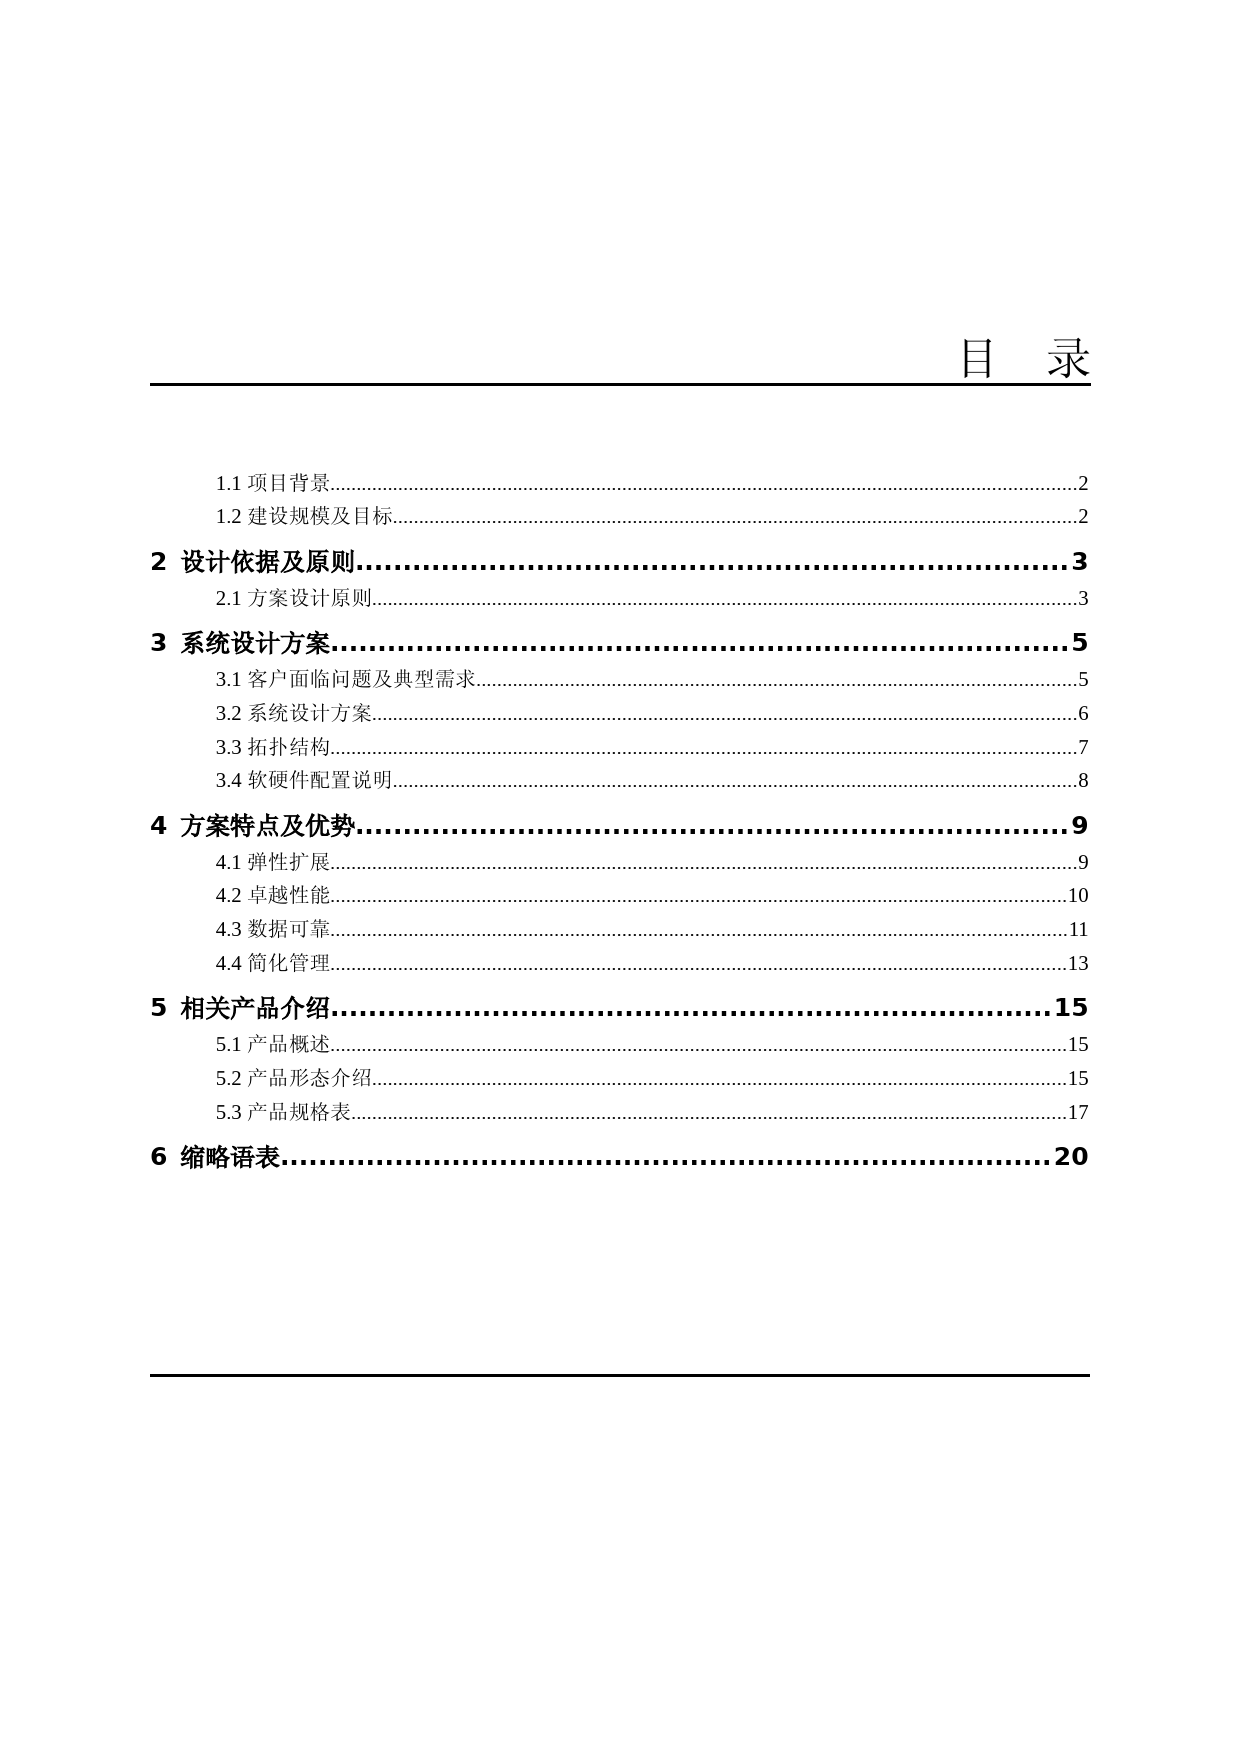 华为OceanStor-9000技术建议书(纯方案-17页)